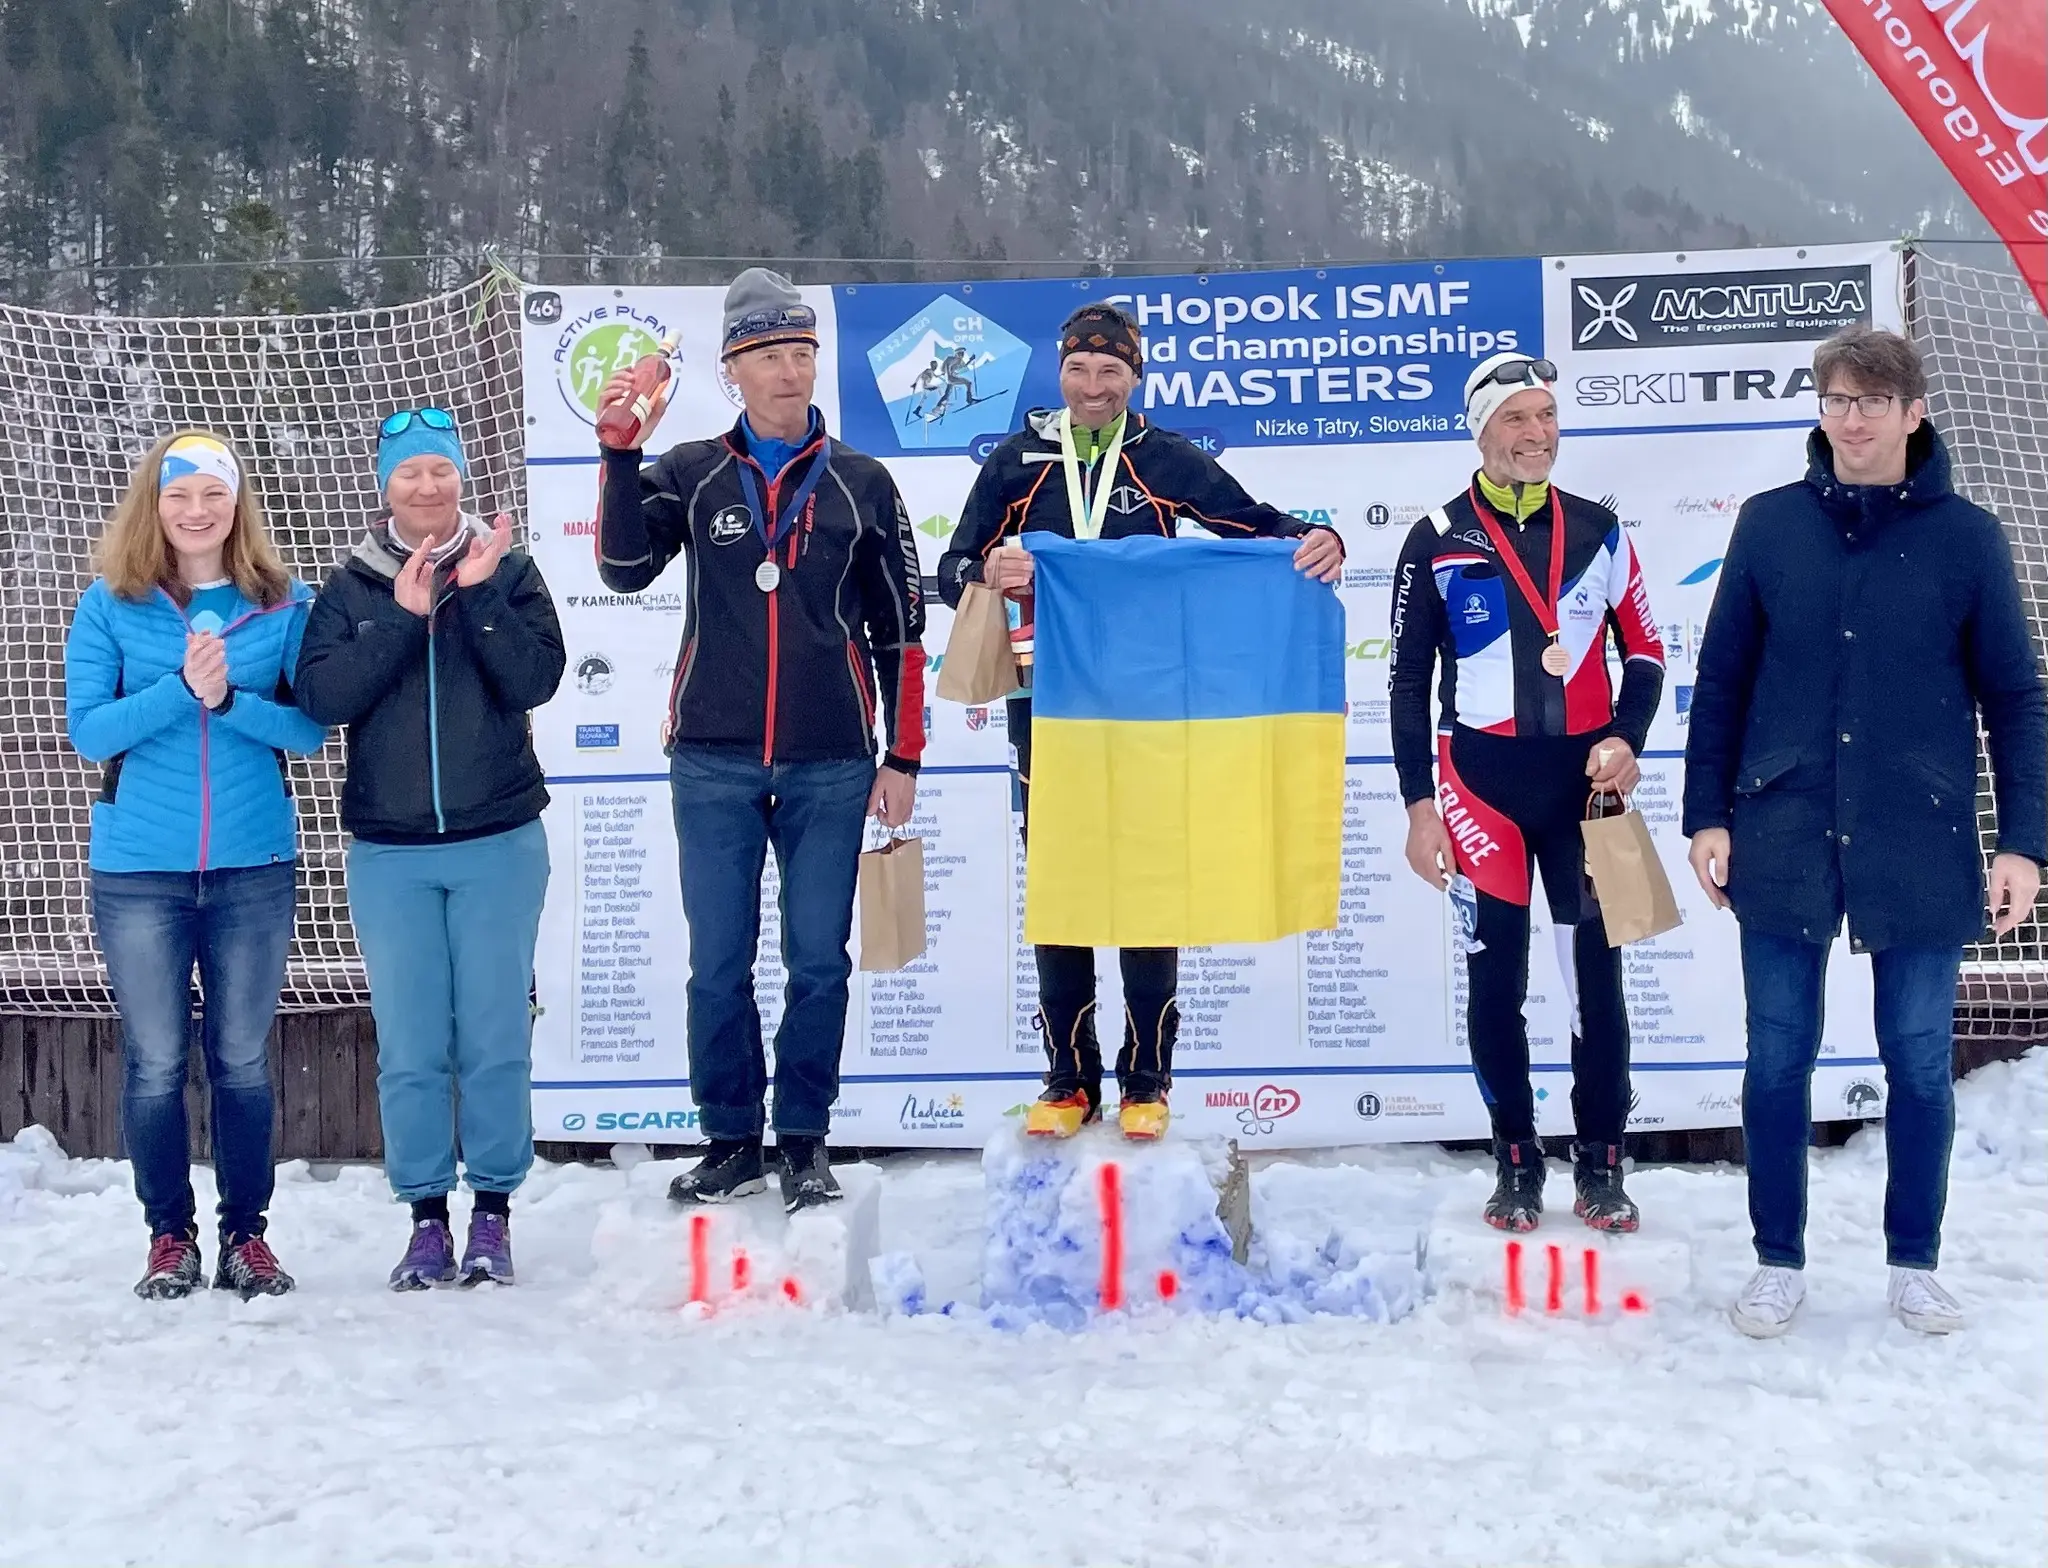 Олівсон Олександр посів 1 місце. World Championships ISMF MASTERS Slovakia, Low Tatras (south). Фото Федерація альпінізму і скелелазіння України 